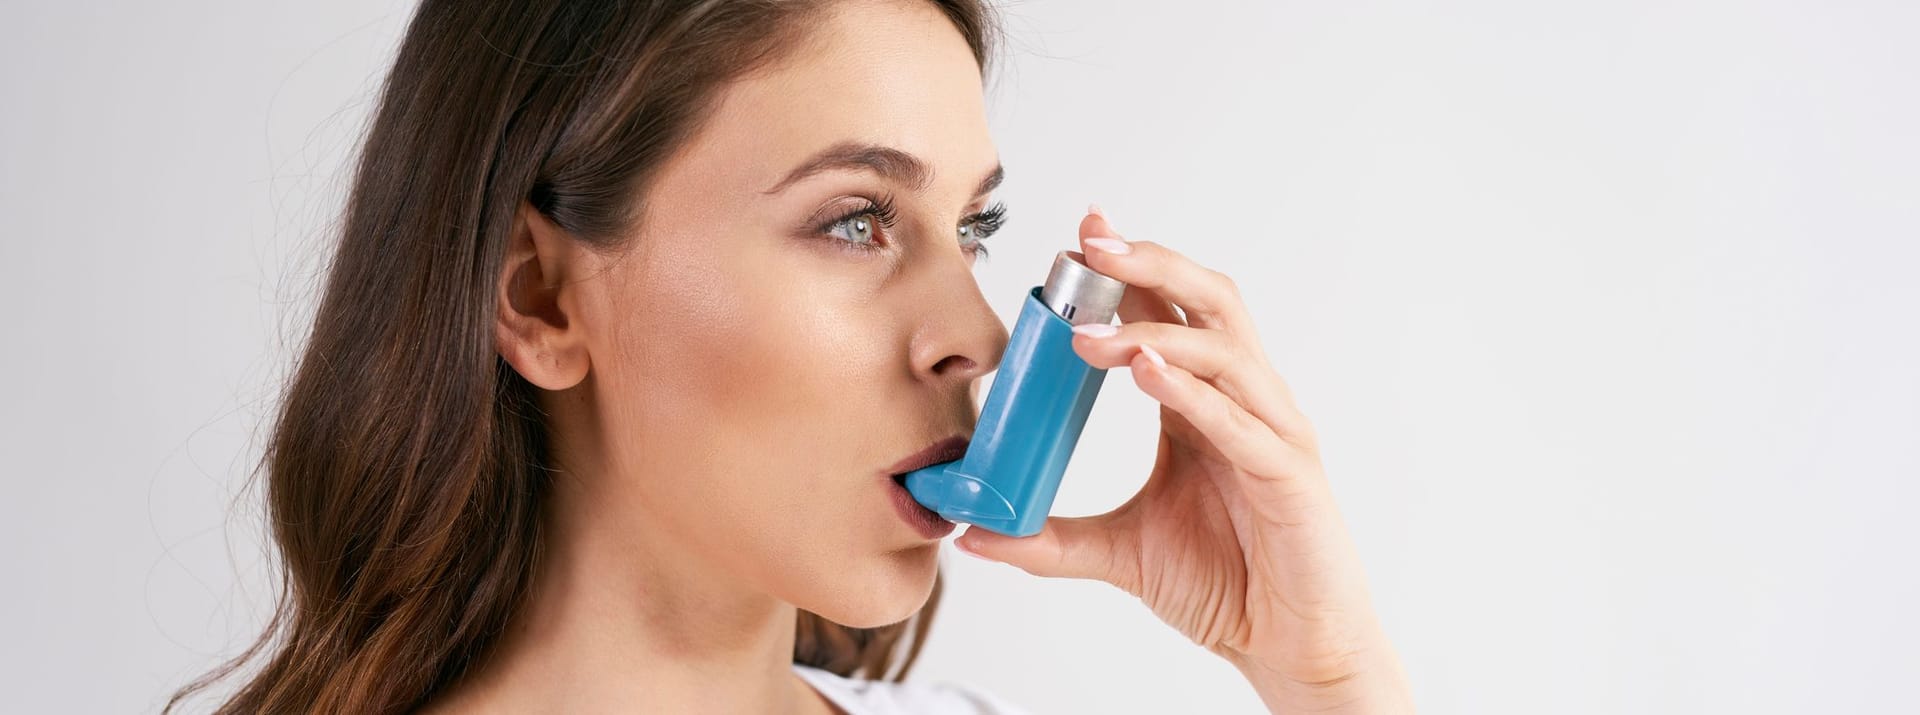 Zur Behandlung einer akute als auch chronische Nasennebenhöhlenentzündungen können mit Kortison-Spray genutzt werden. In manchen Fällen kann Inhalieren oder auch Nasenspülungen helfen, die Symptome zu lindern. Diese Methoden helfen jedoch nur bei einer akuten Sinusitis, bei einer chronischen können Biologika mit dem Wirkstoff Dupilumab eingesetzt werden. Dupilumab wird zur Behandlung unter die Haut gespritzt und kann den Entzündungen hemmen.